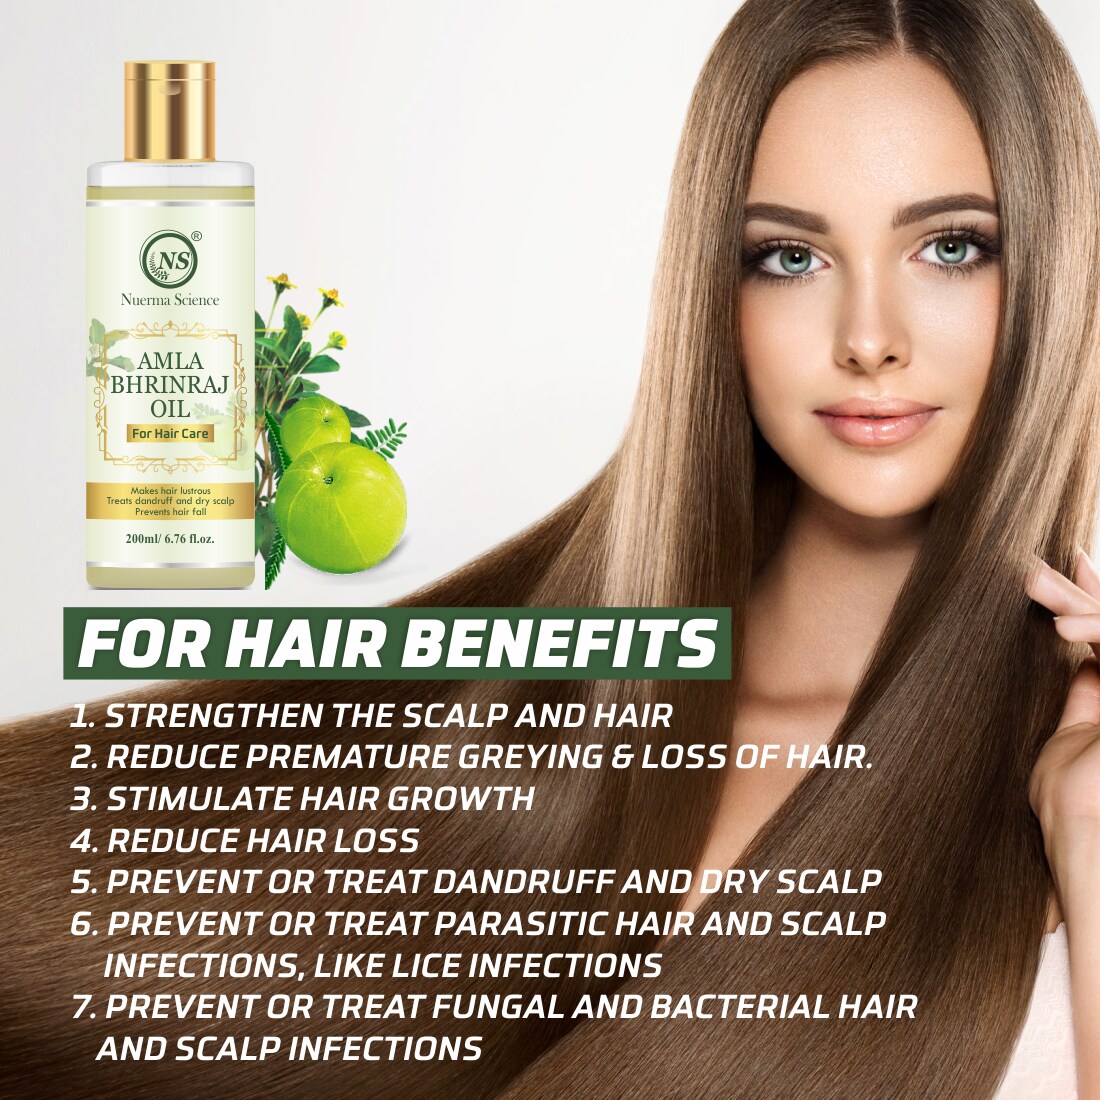 Nuerma Science Amla Bhringraj Hair Oil for Fast Strong Hair Growth & Anti  Hair-Fall Hair Oil-200ml - JioMart